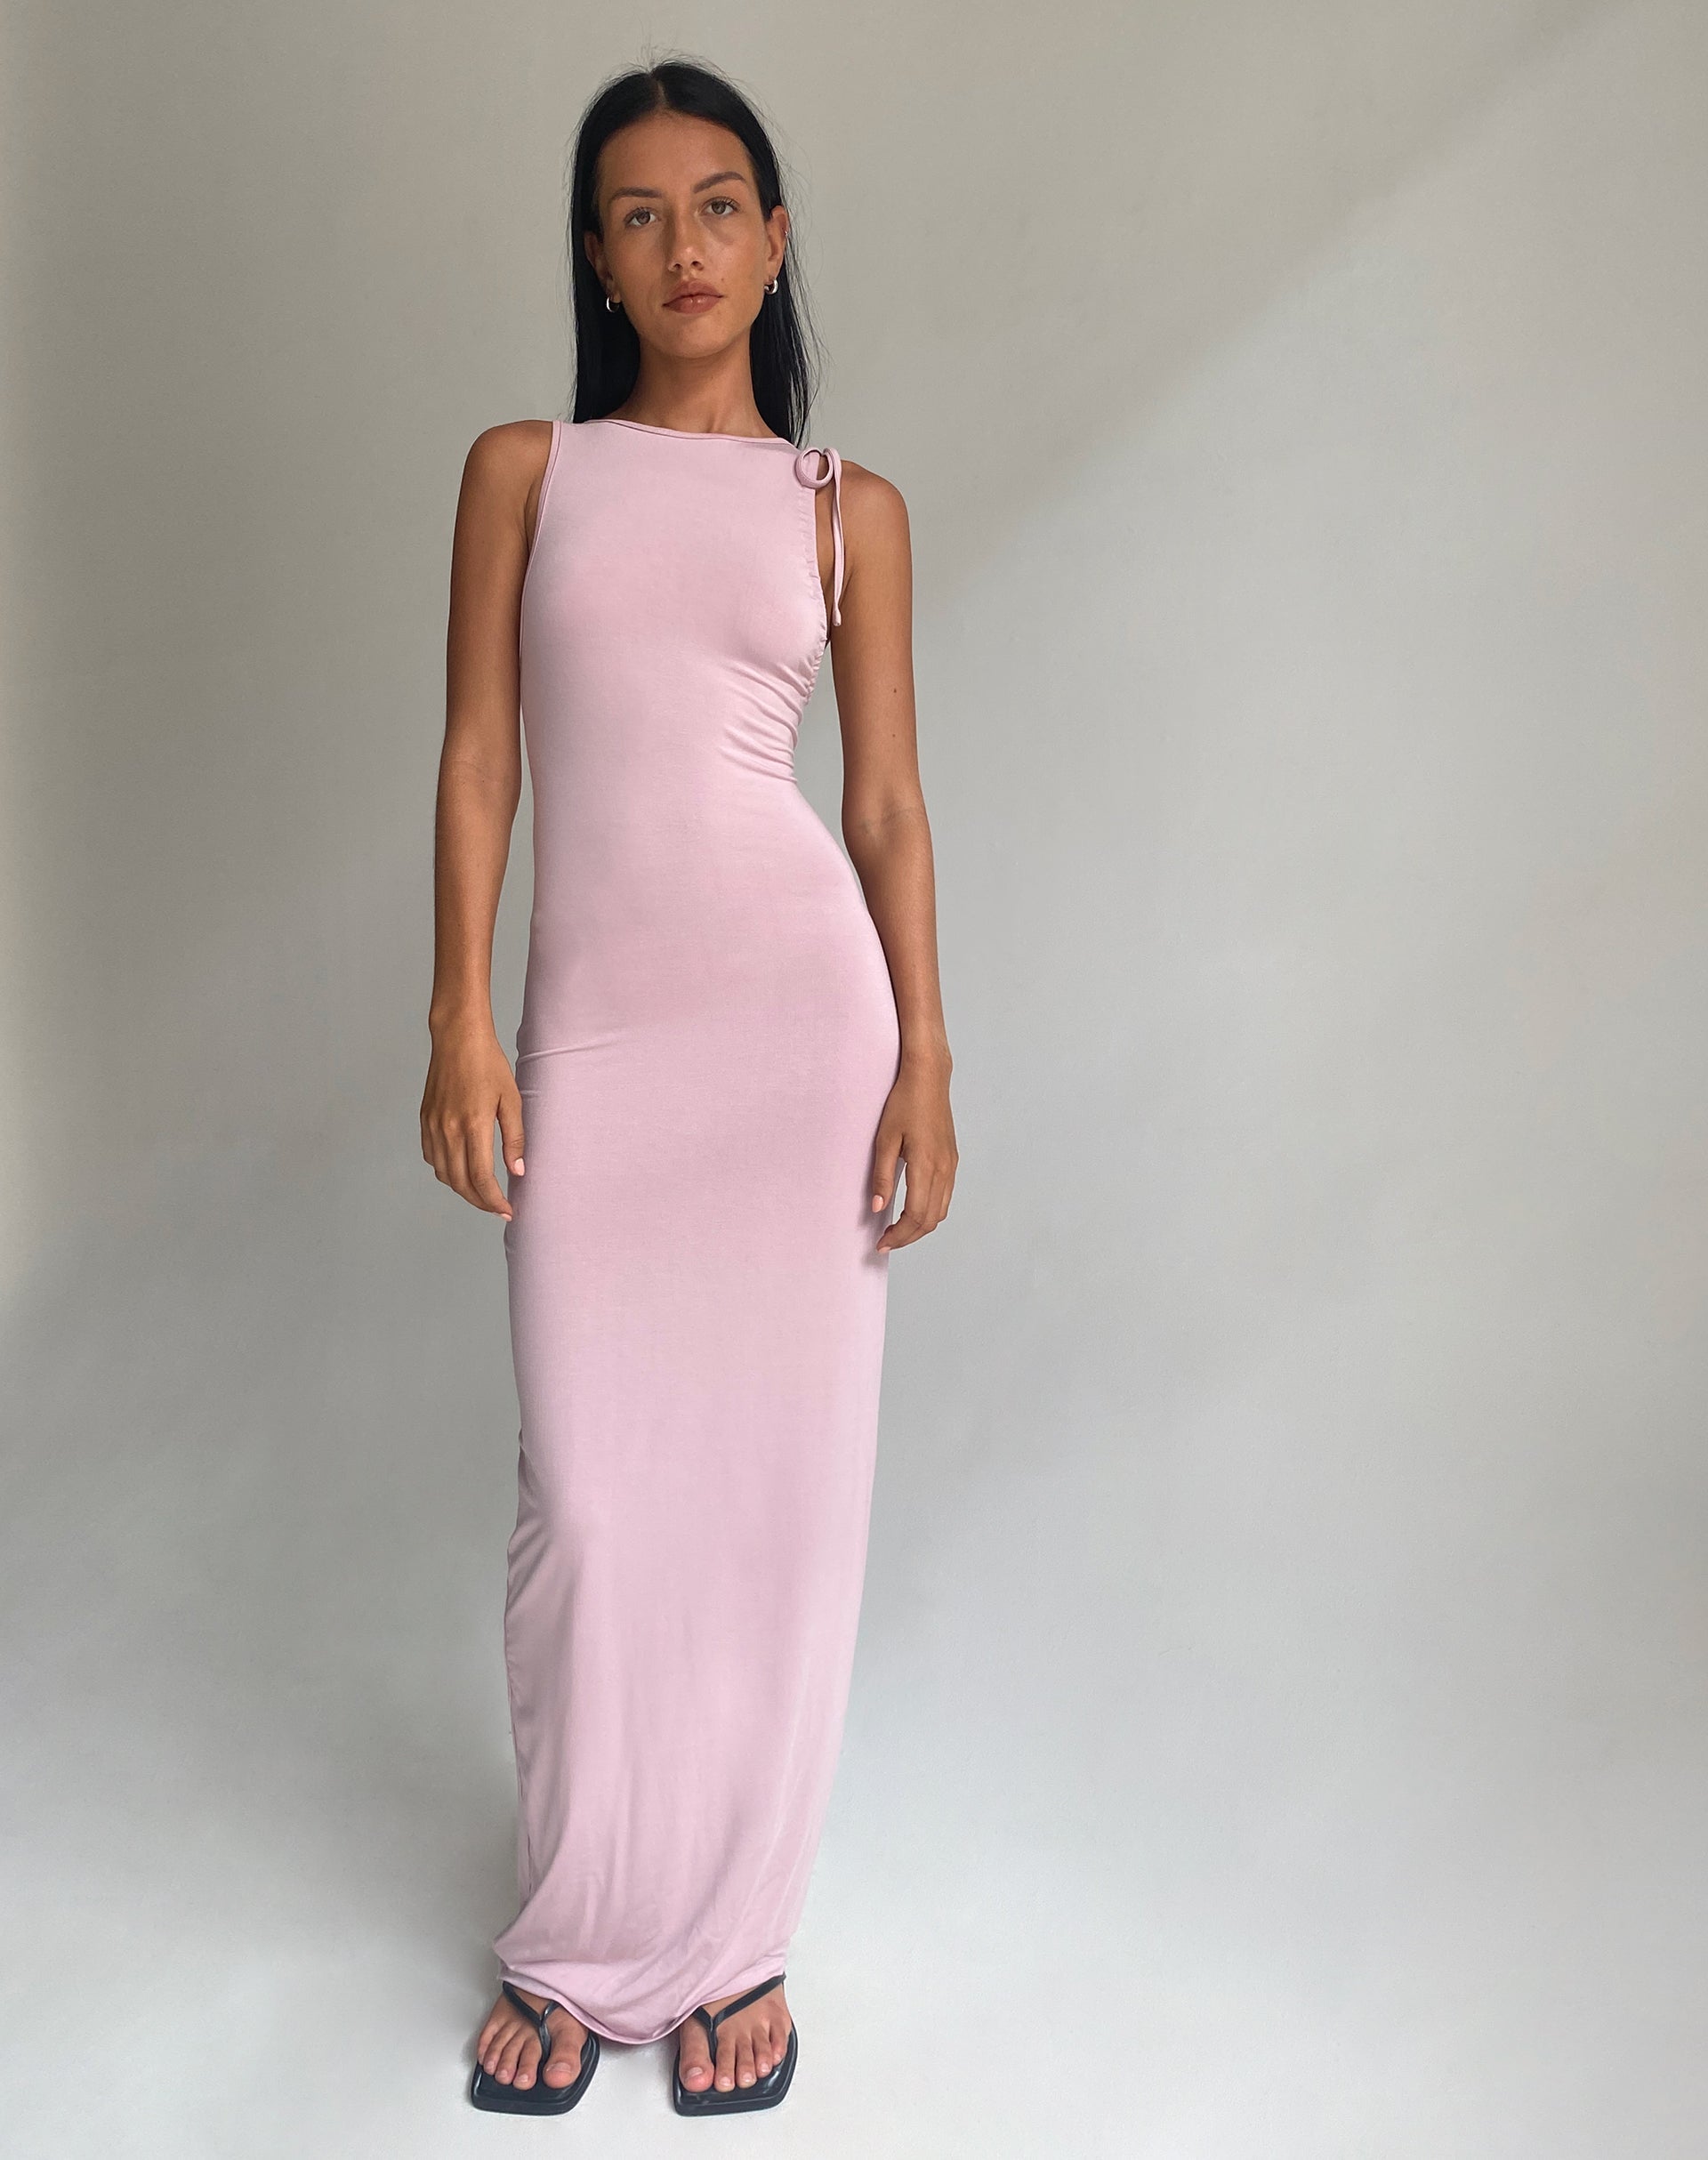 Share more than 132 light pink dress super hot